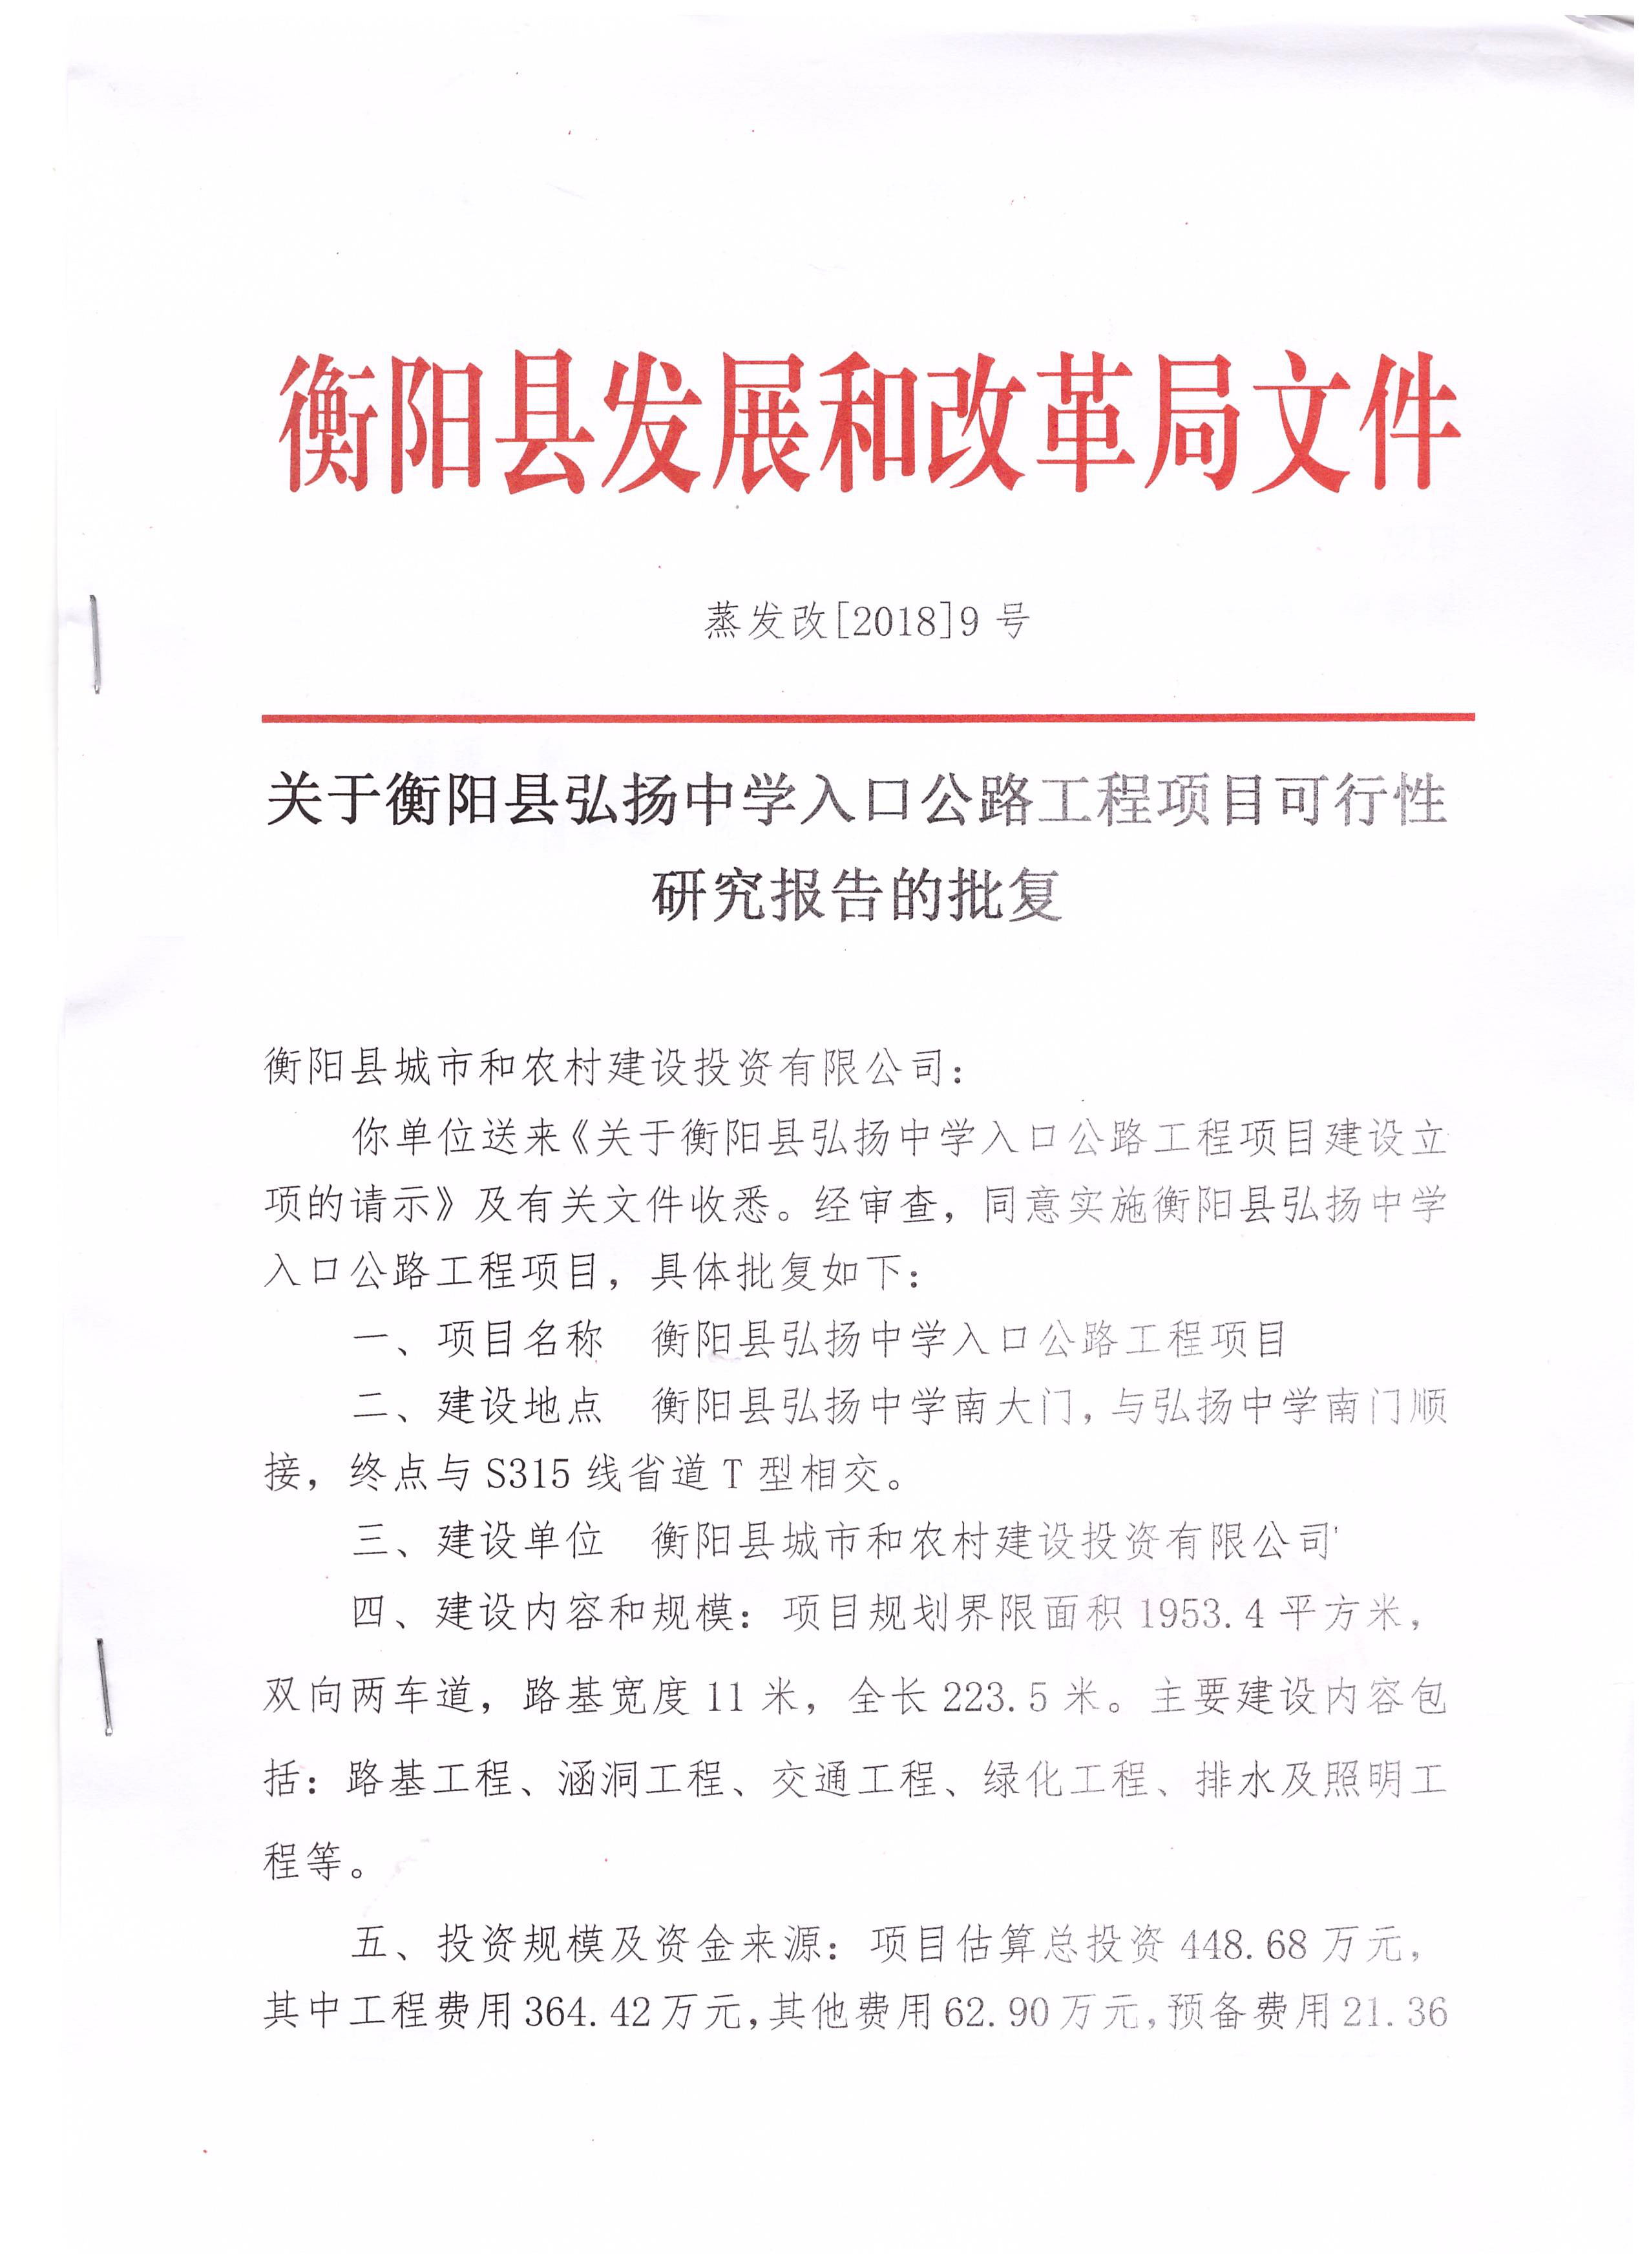 法律依据 《中共中央国务院关于深化投融资体制改革的意见》(中发〔